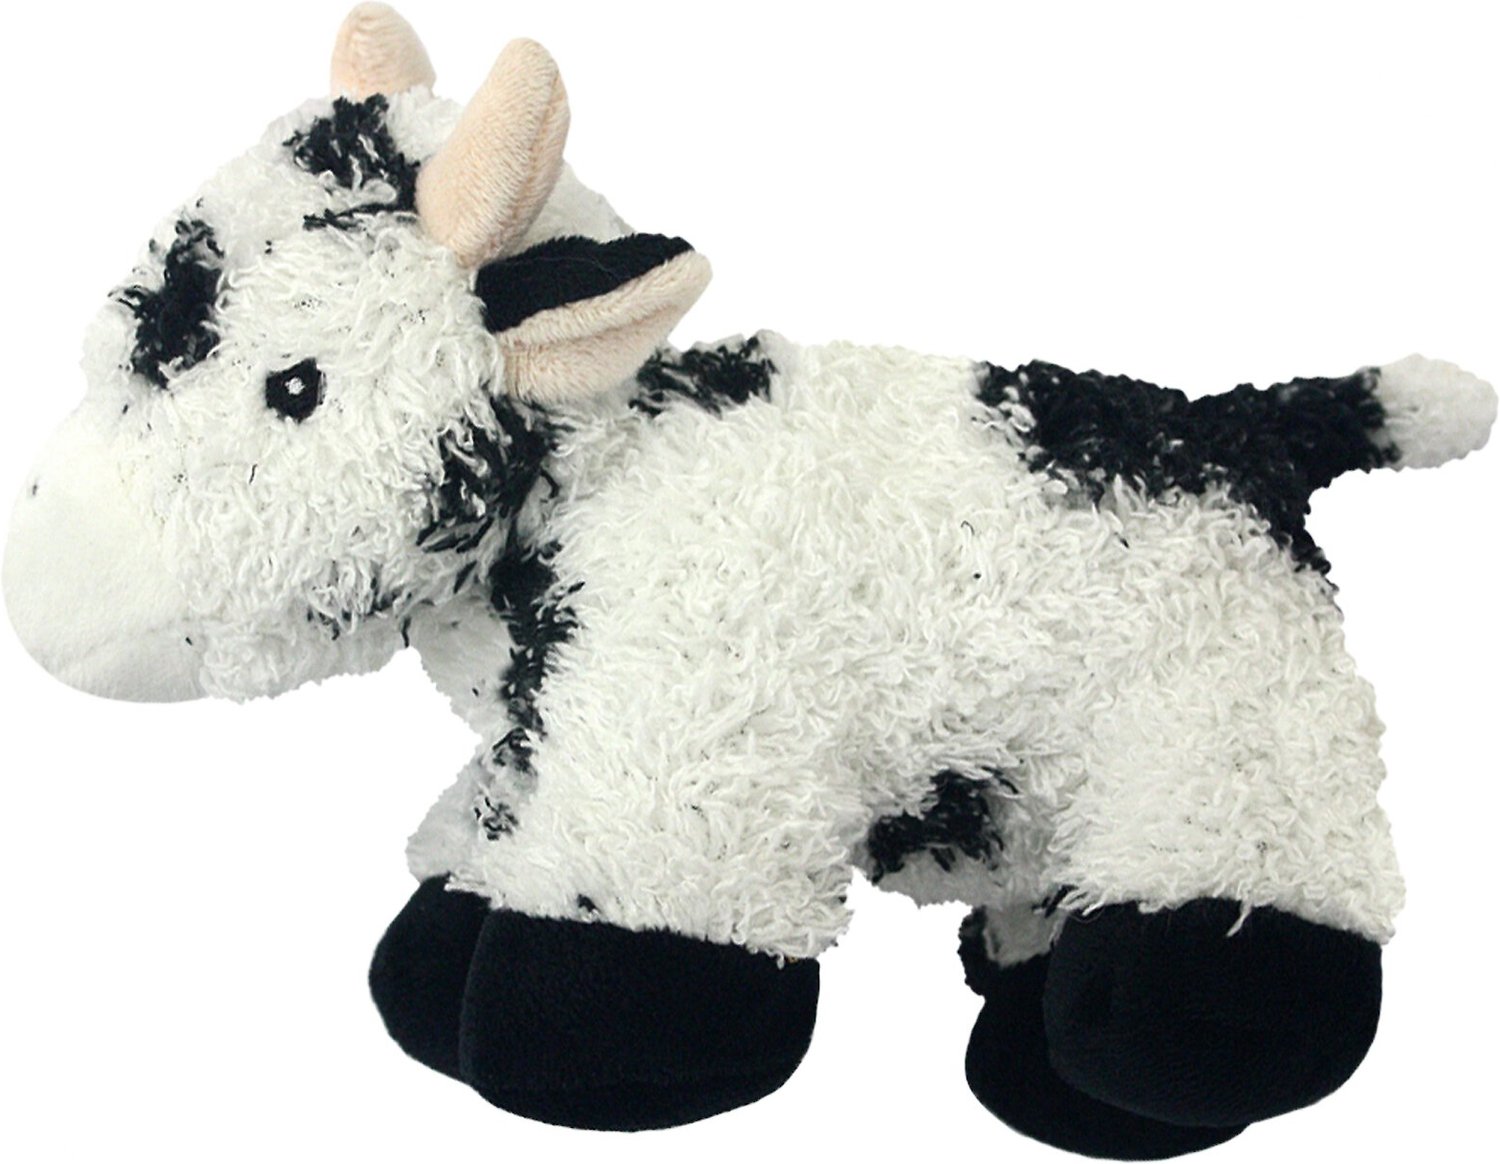 cow plush